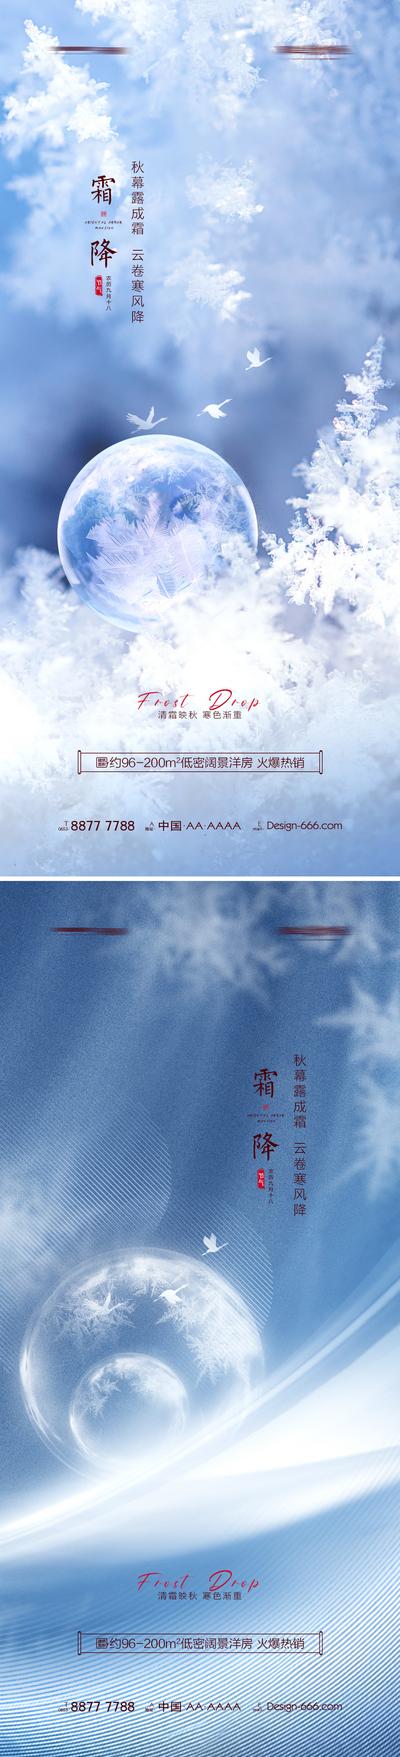 南门网 广告 海报 地产 霜降 节气 系列 意境 冬天